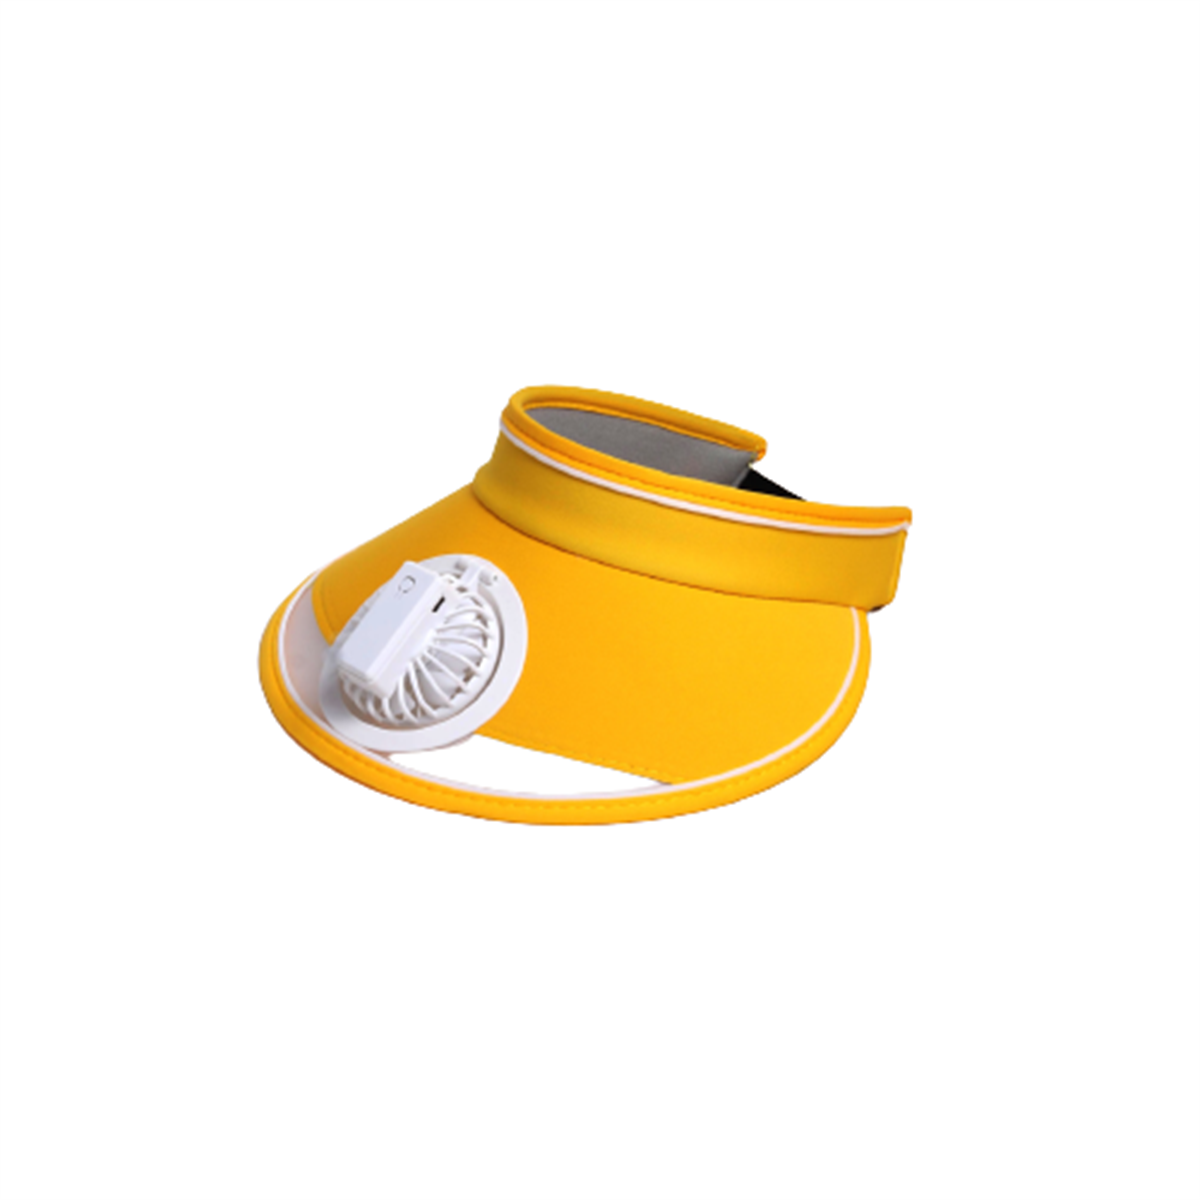 Fan Weißer Weiß SYNTEK wiederaufladbarer USB Sonnenhut Hut Hut Hut leerer Sonnenschutz Kinder Fan